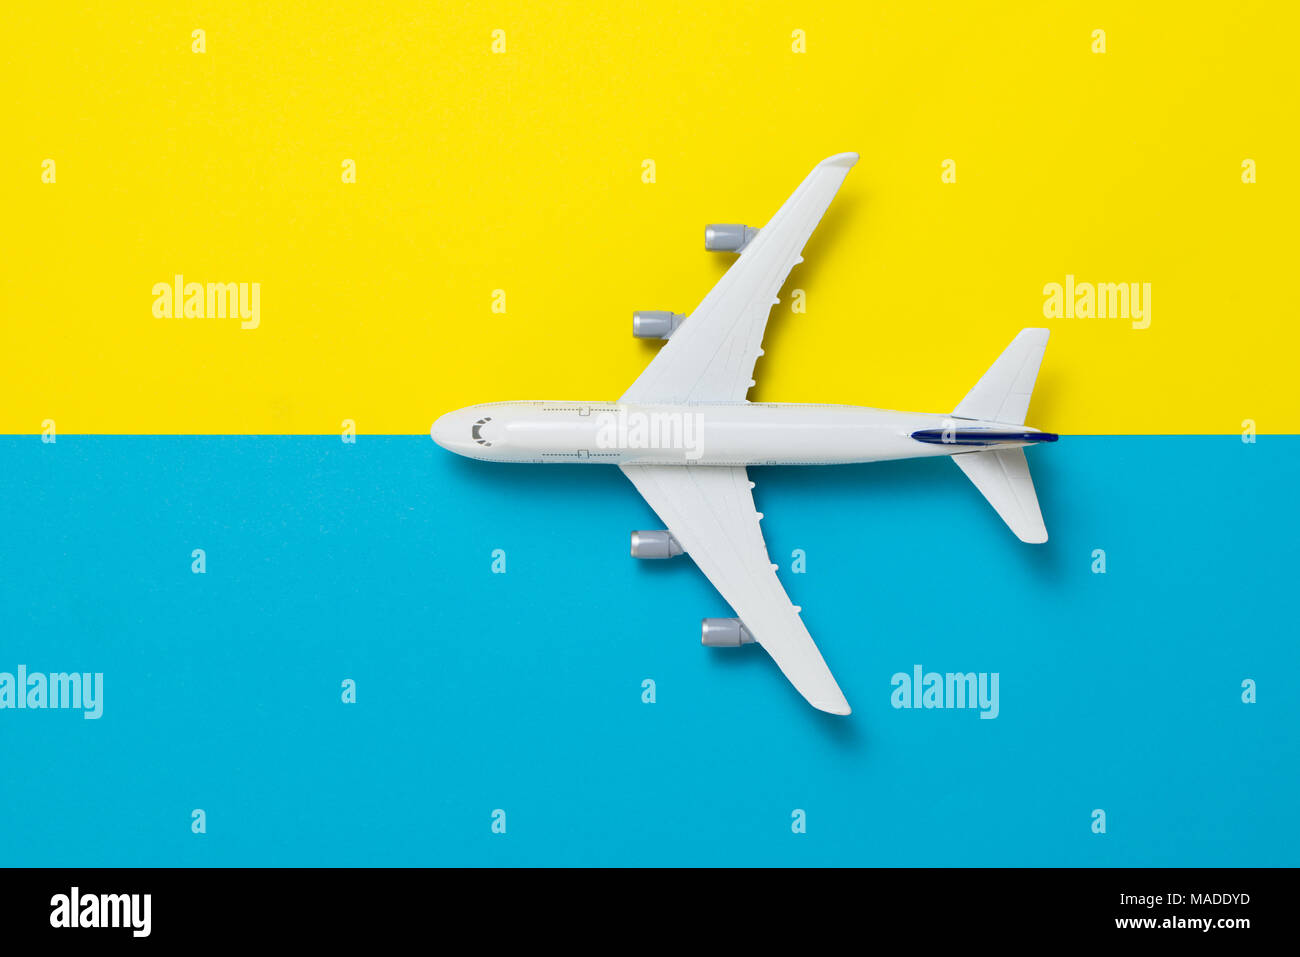 Miniature airplane travel theme Stock Photo